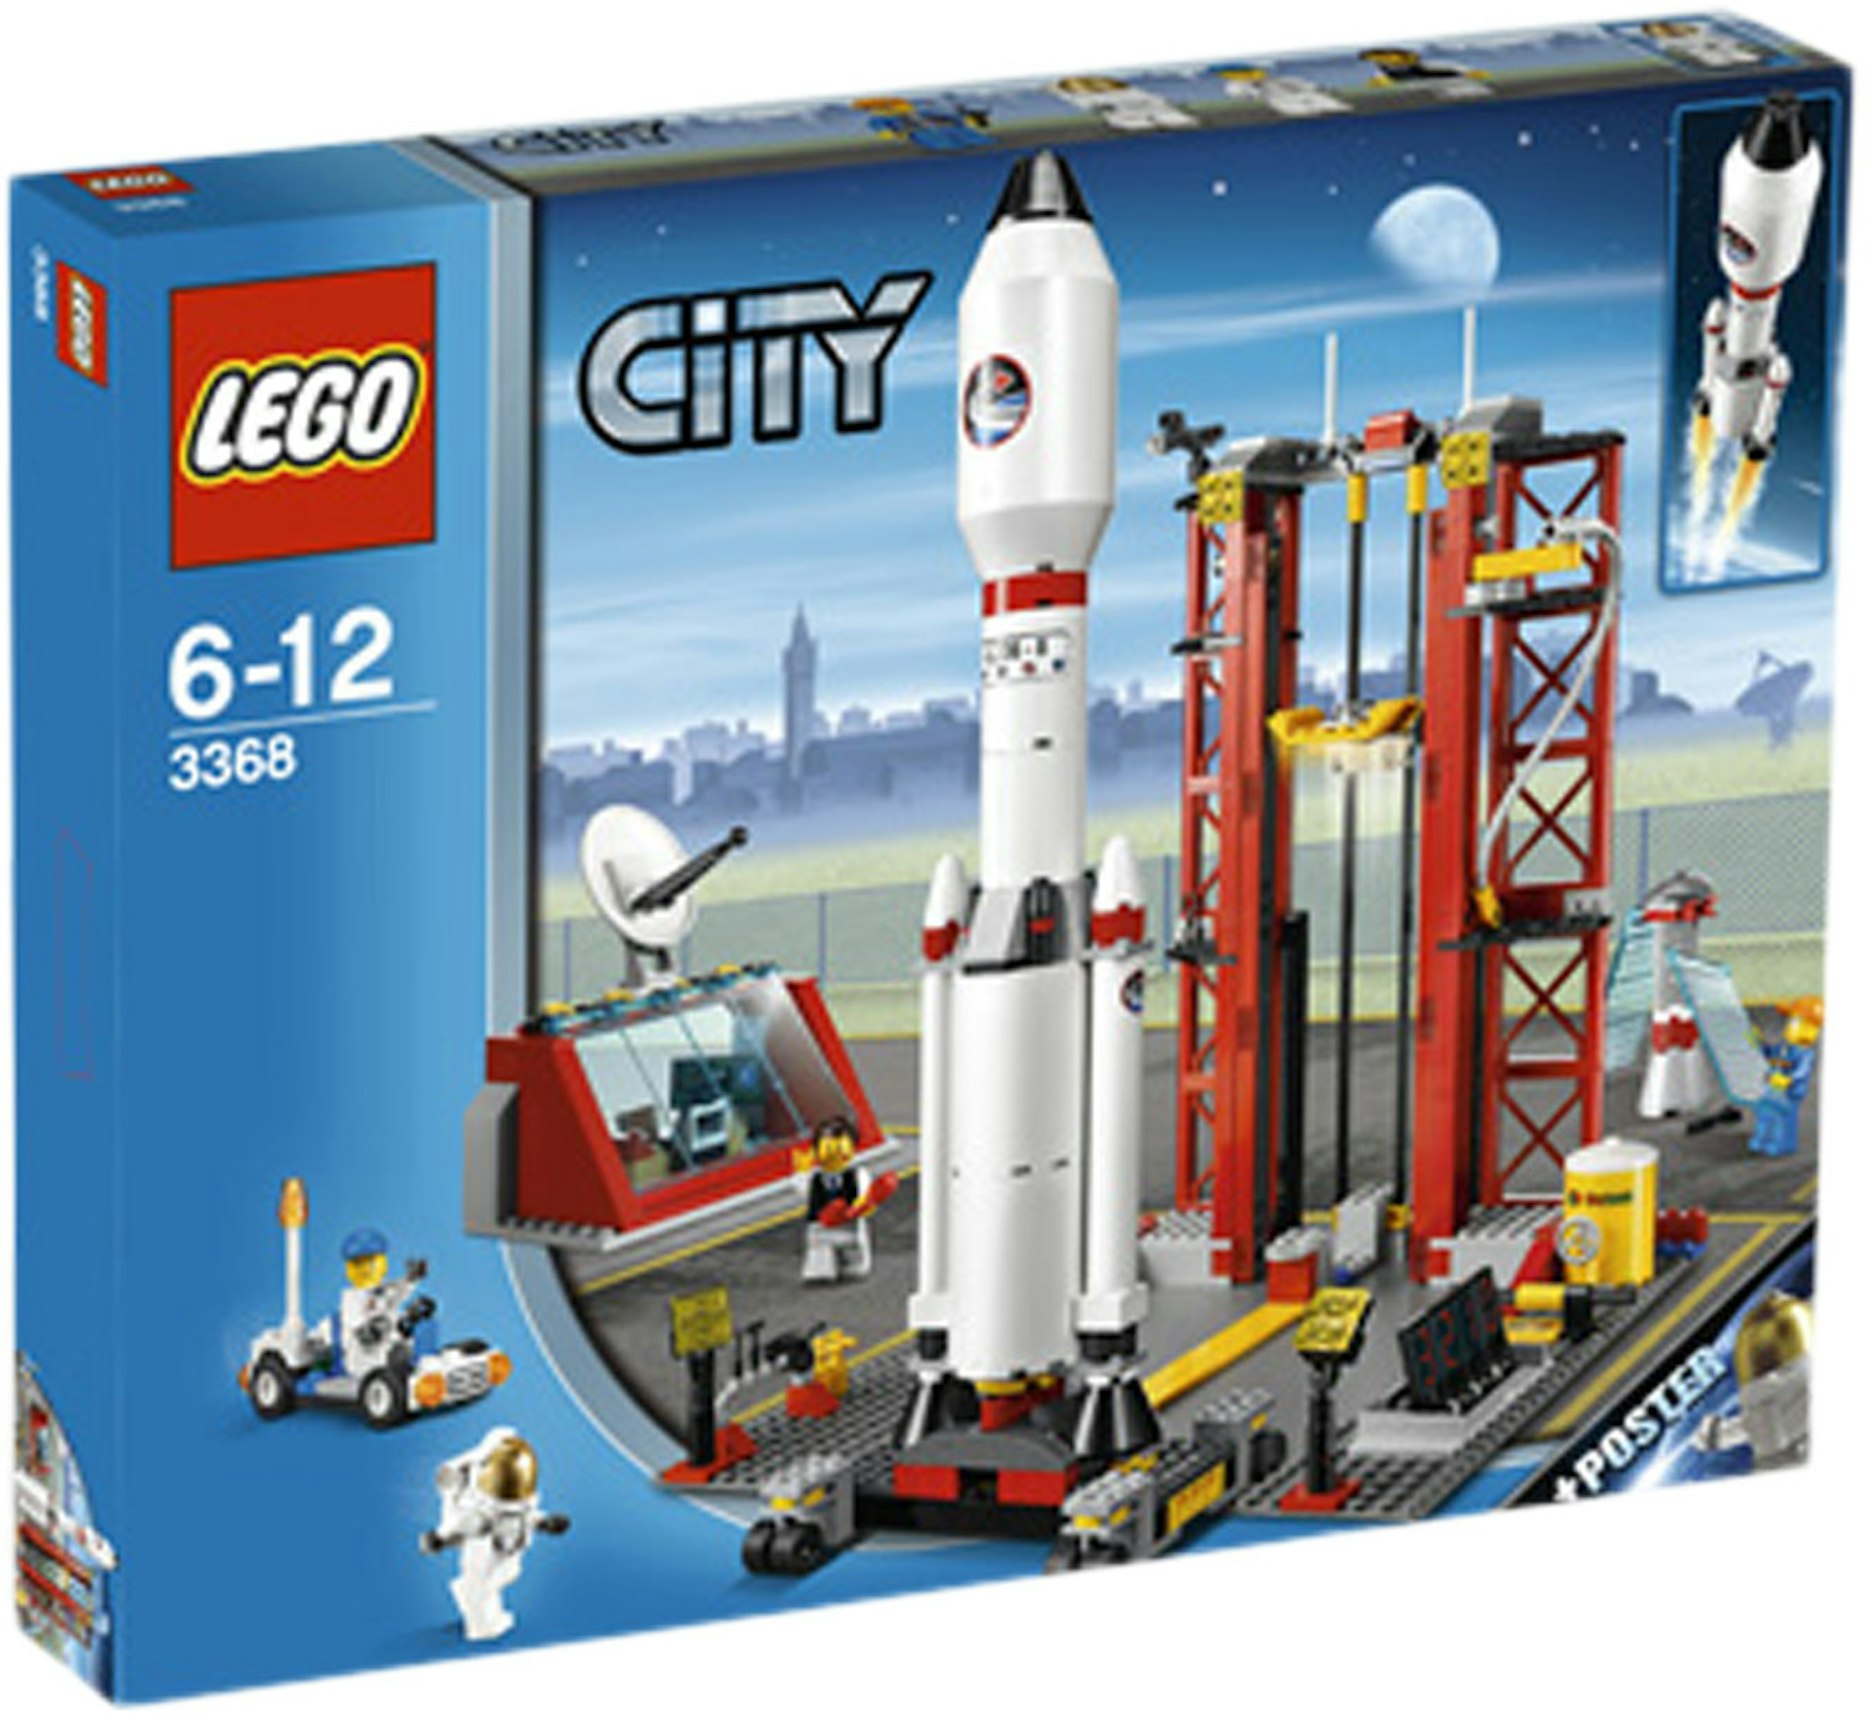 LEGO City Space Centre Set 3368 US